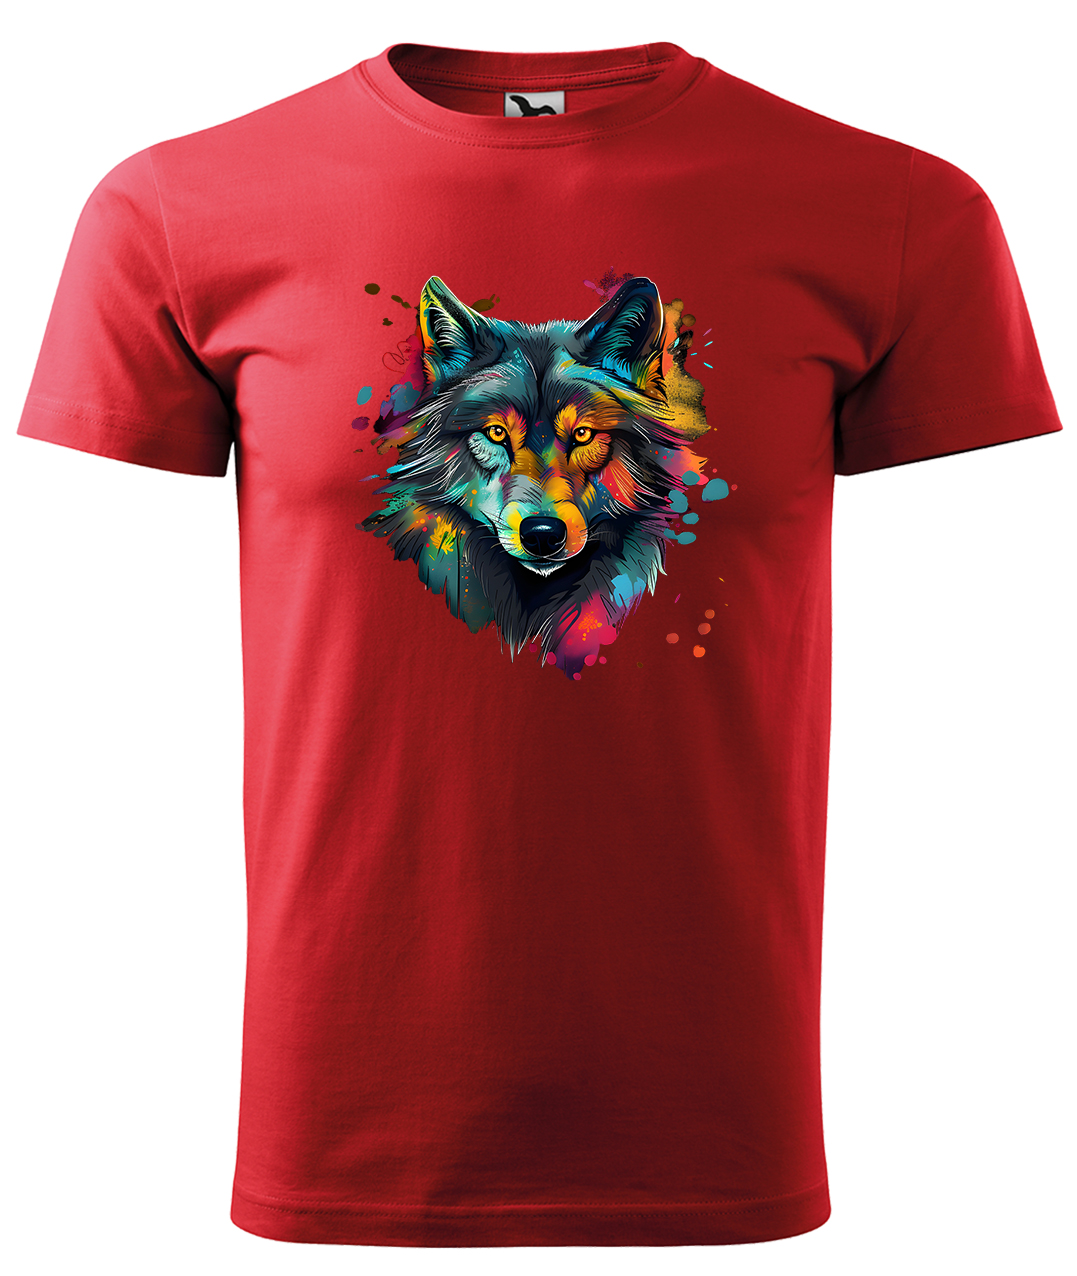 Dětské tričko s vlkem - Malovaný vlk Velikost: 12 let / 158 cm, Barva: Červená (07), Délka rukávu: Krátký rukáv